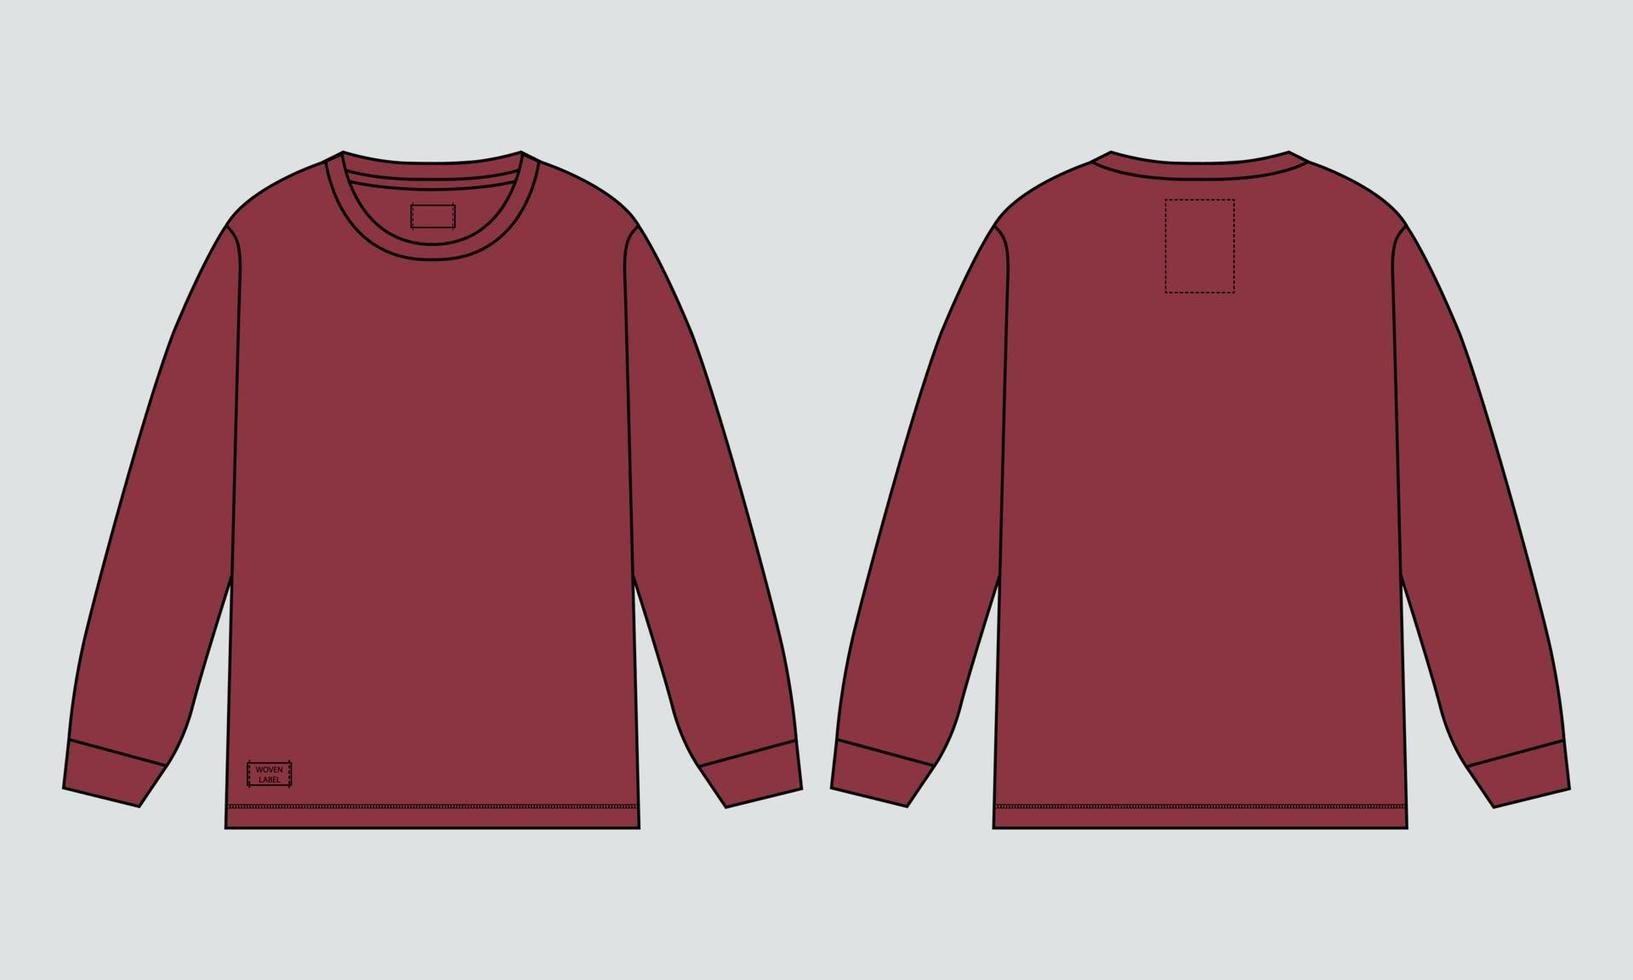 camiseta de manga longa técnica de moda desenho plano ilustração vetorial modelo de cor vermelha para homens e meninos vetor